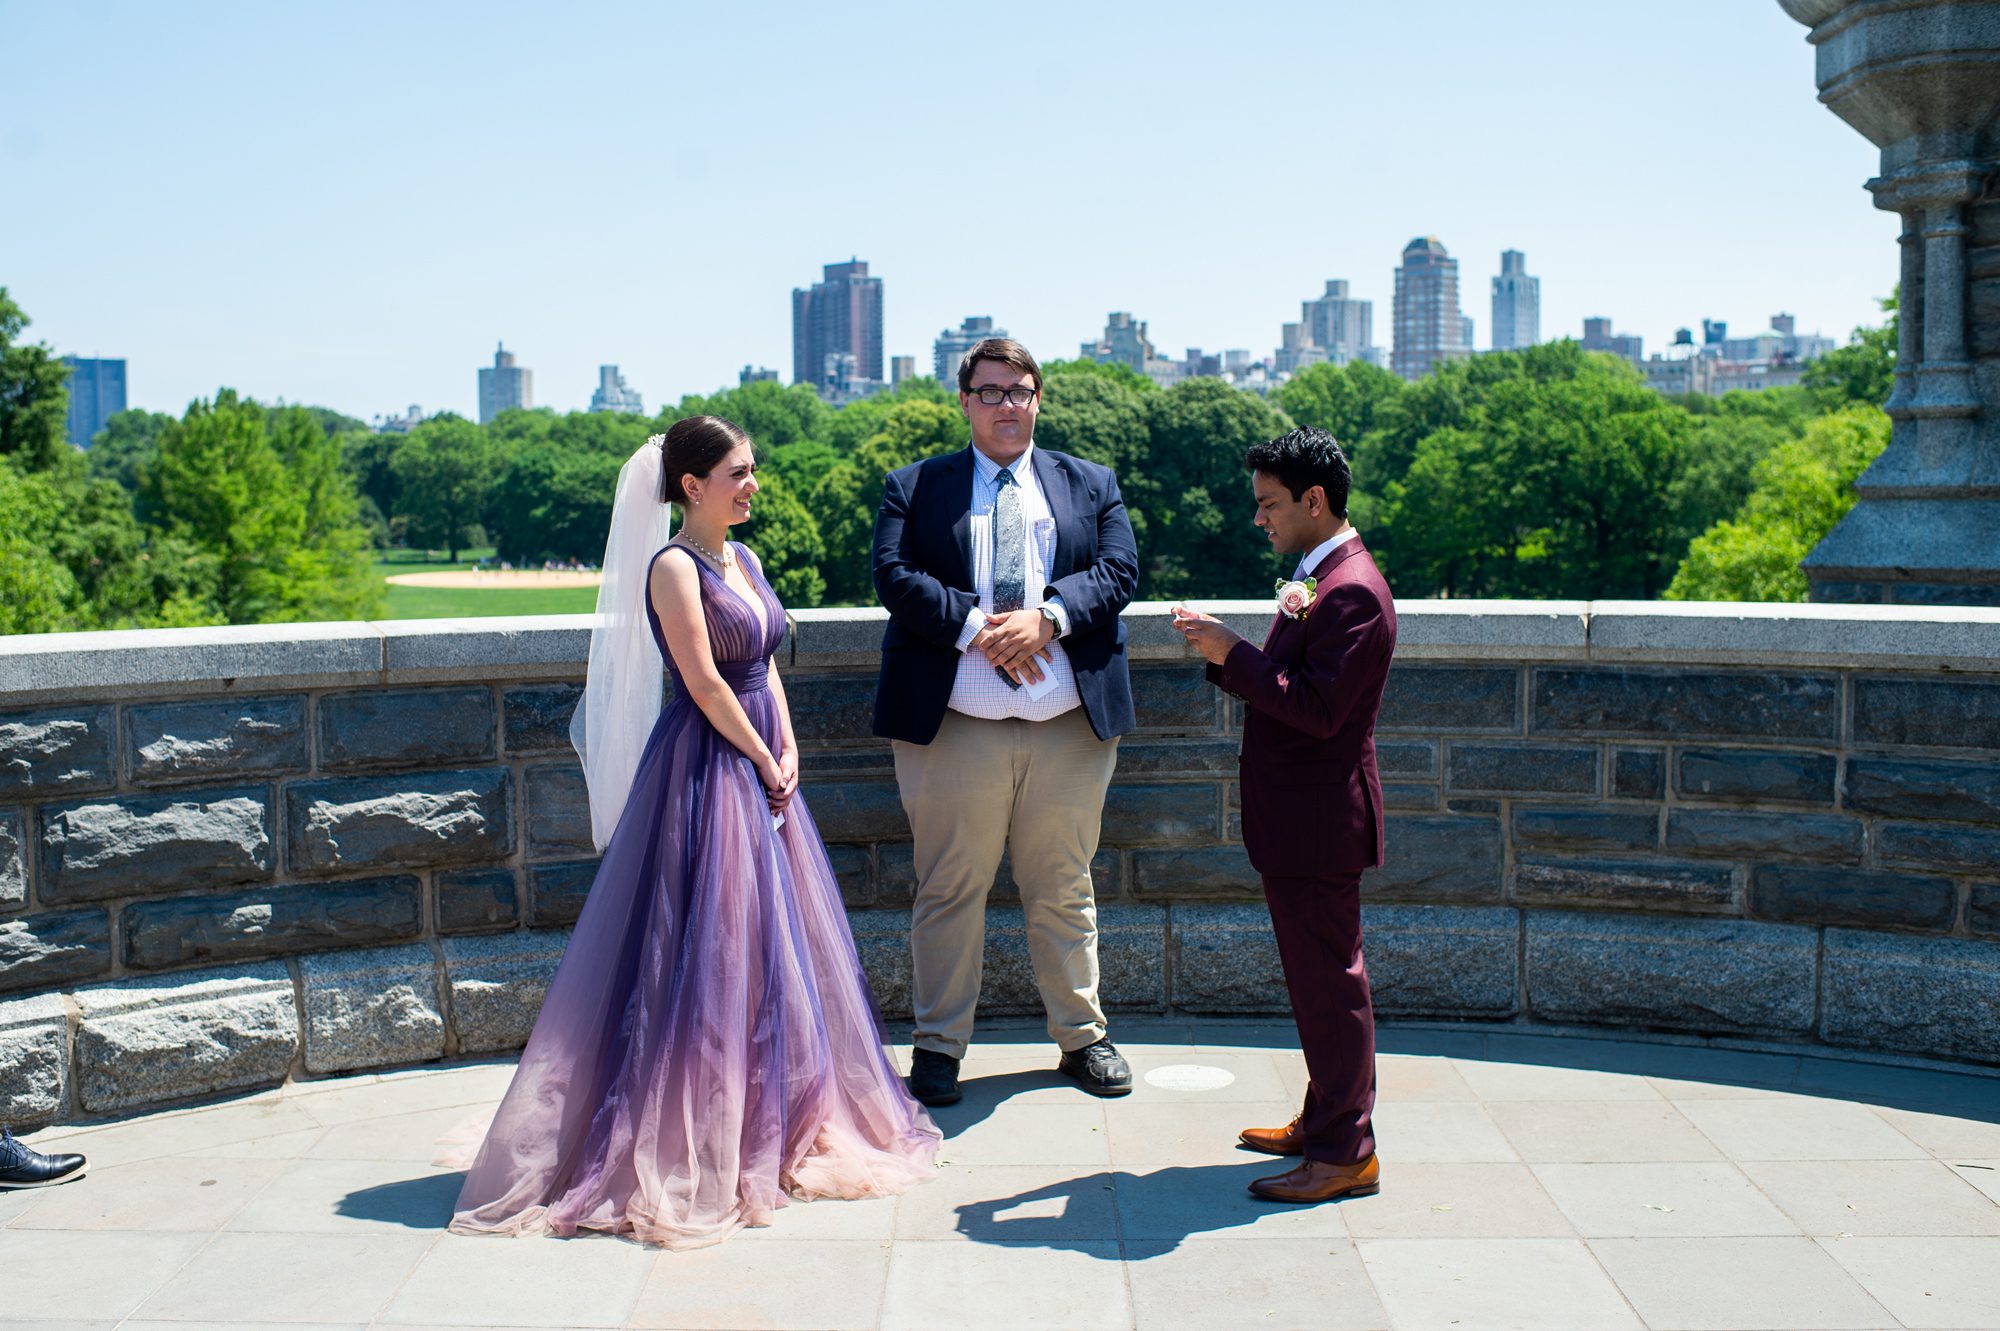 Central Park Wedding at Belvedere Castle